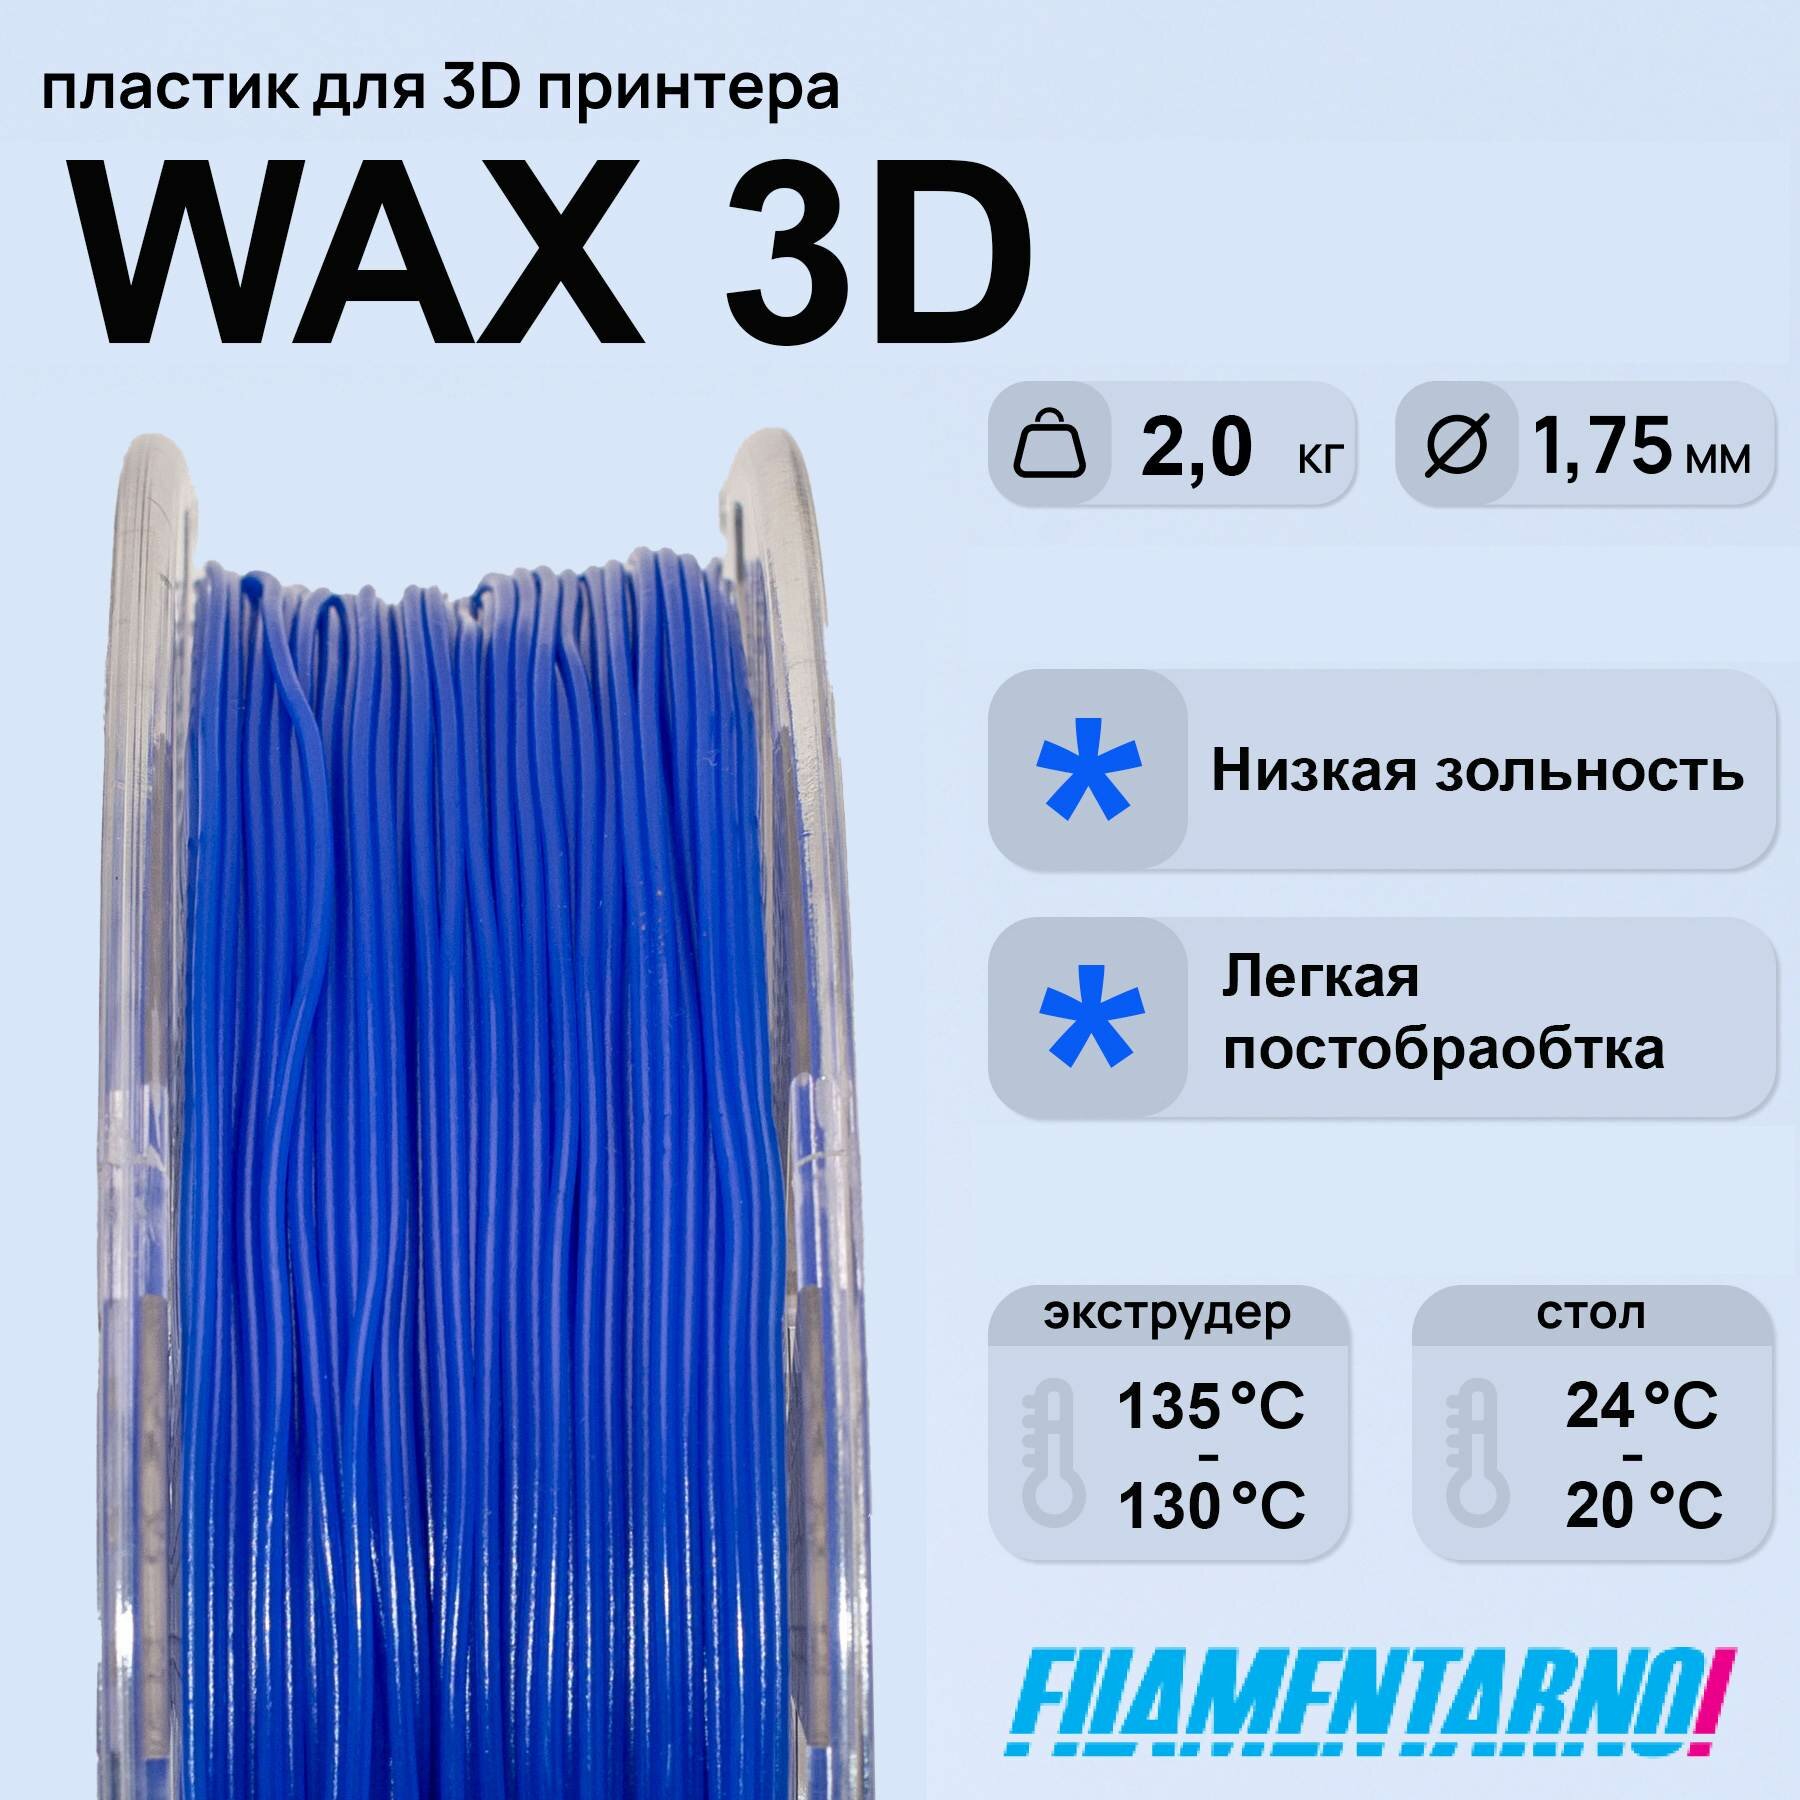 Воск WAX3D синий 2000 г, 1,75 мм, пластик Filamentarno для 3D-принтера